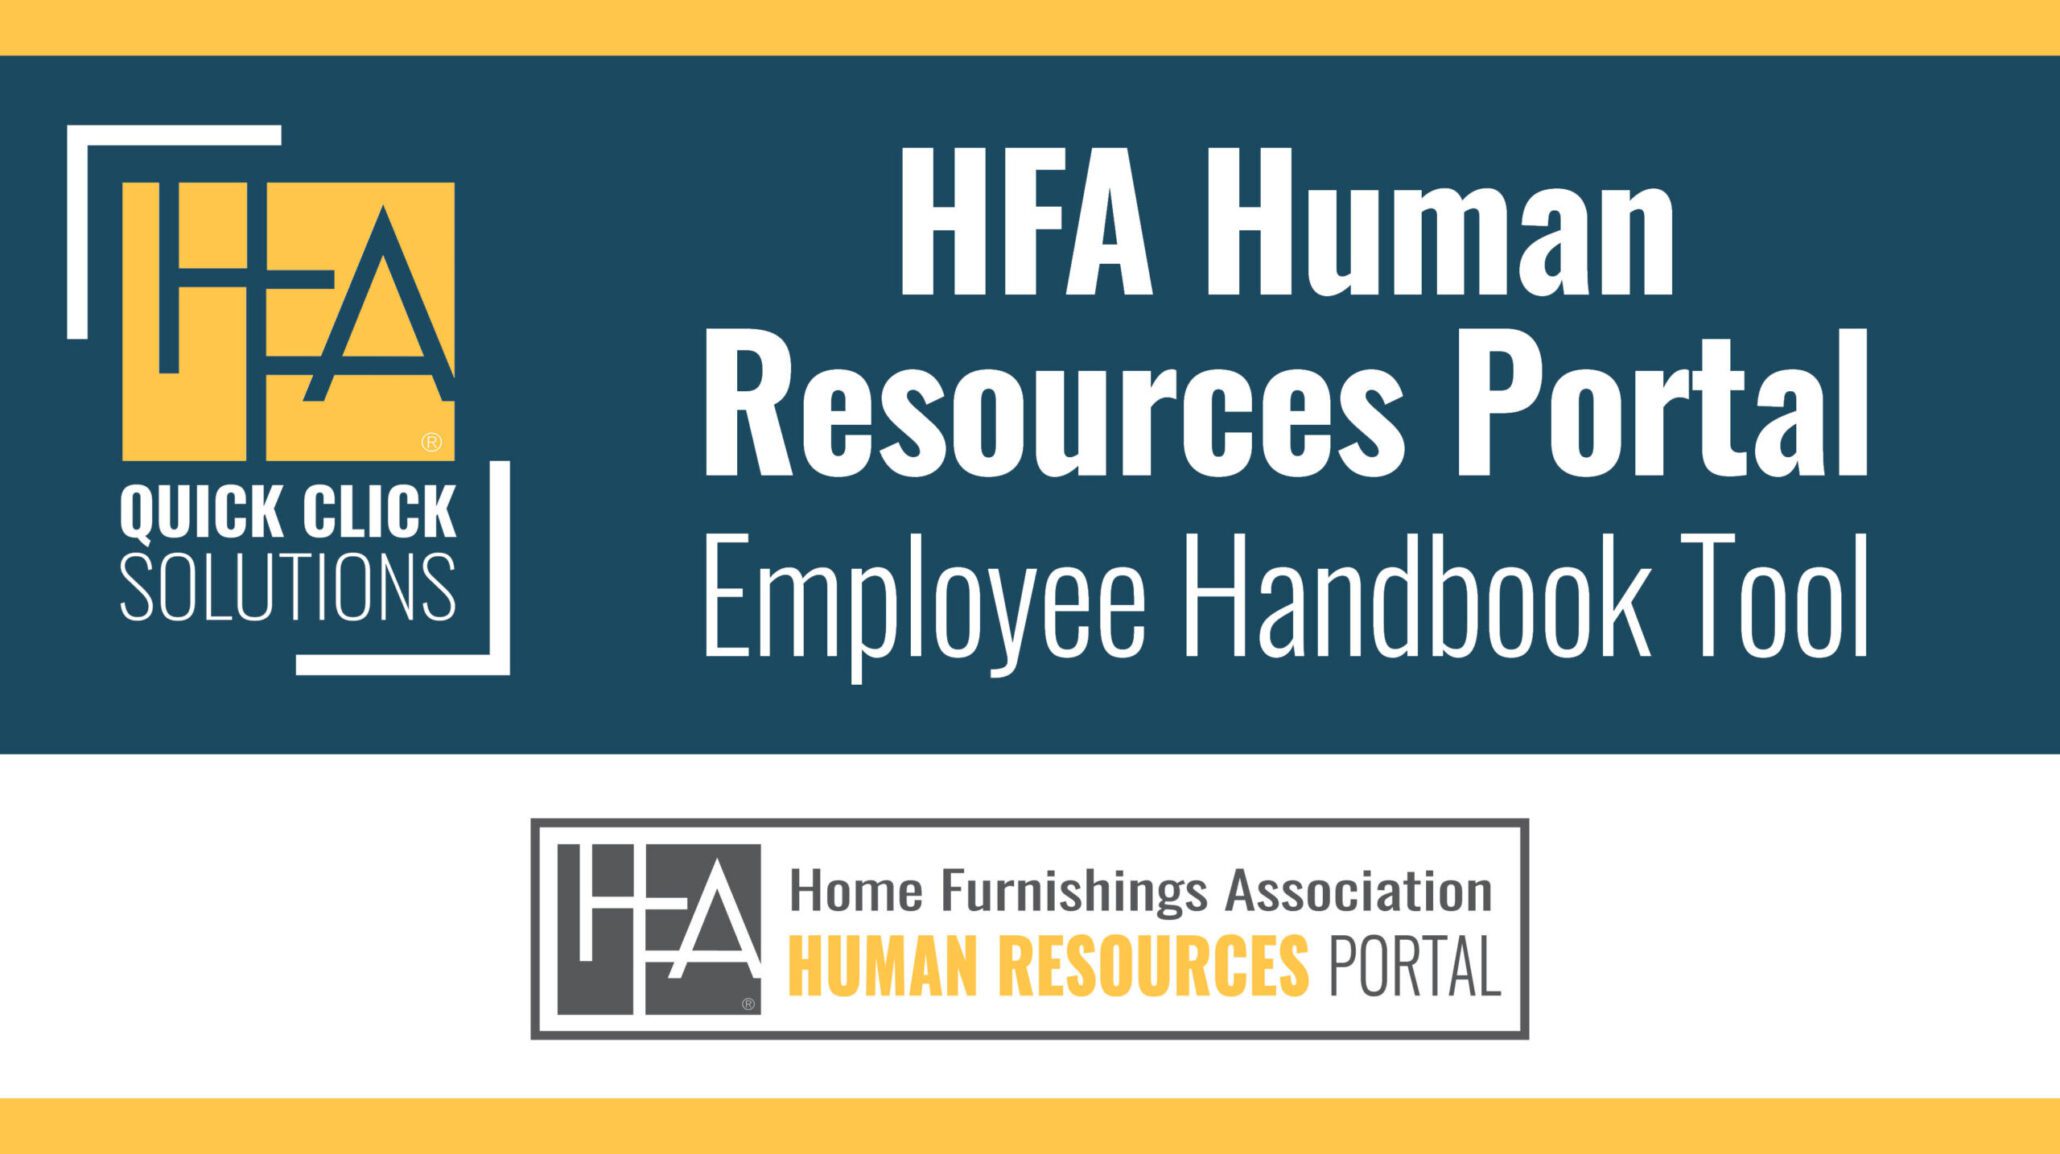 HFA_HR Portal Handbook Tool